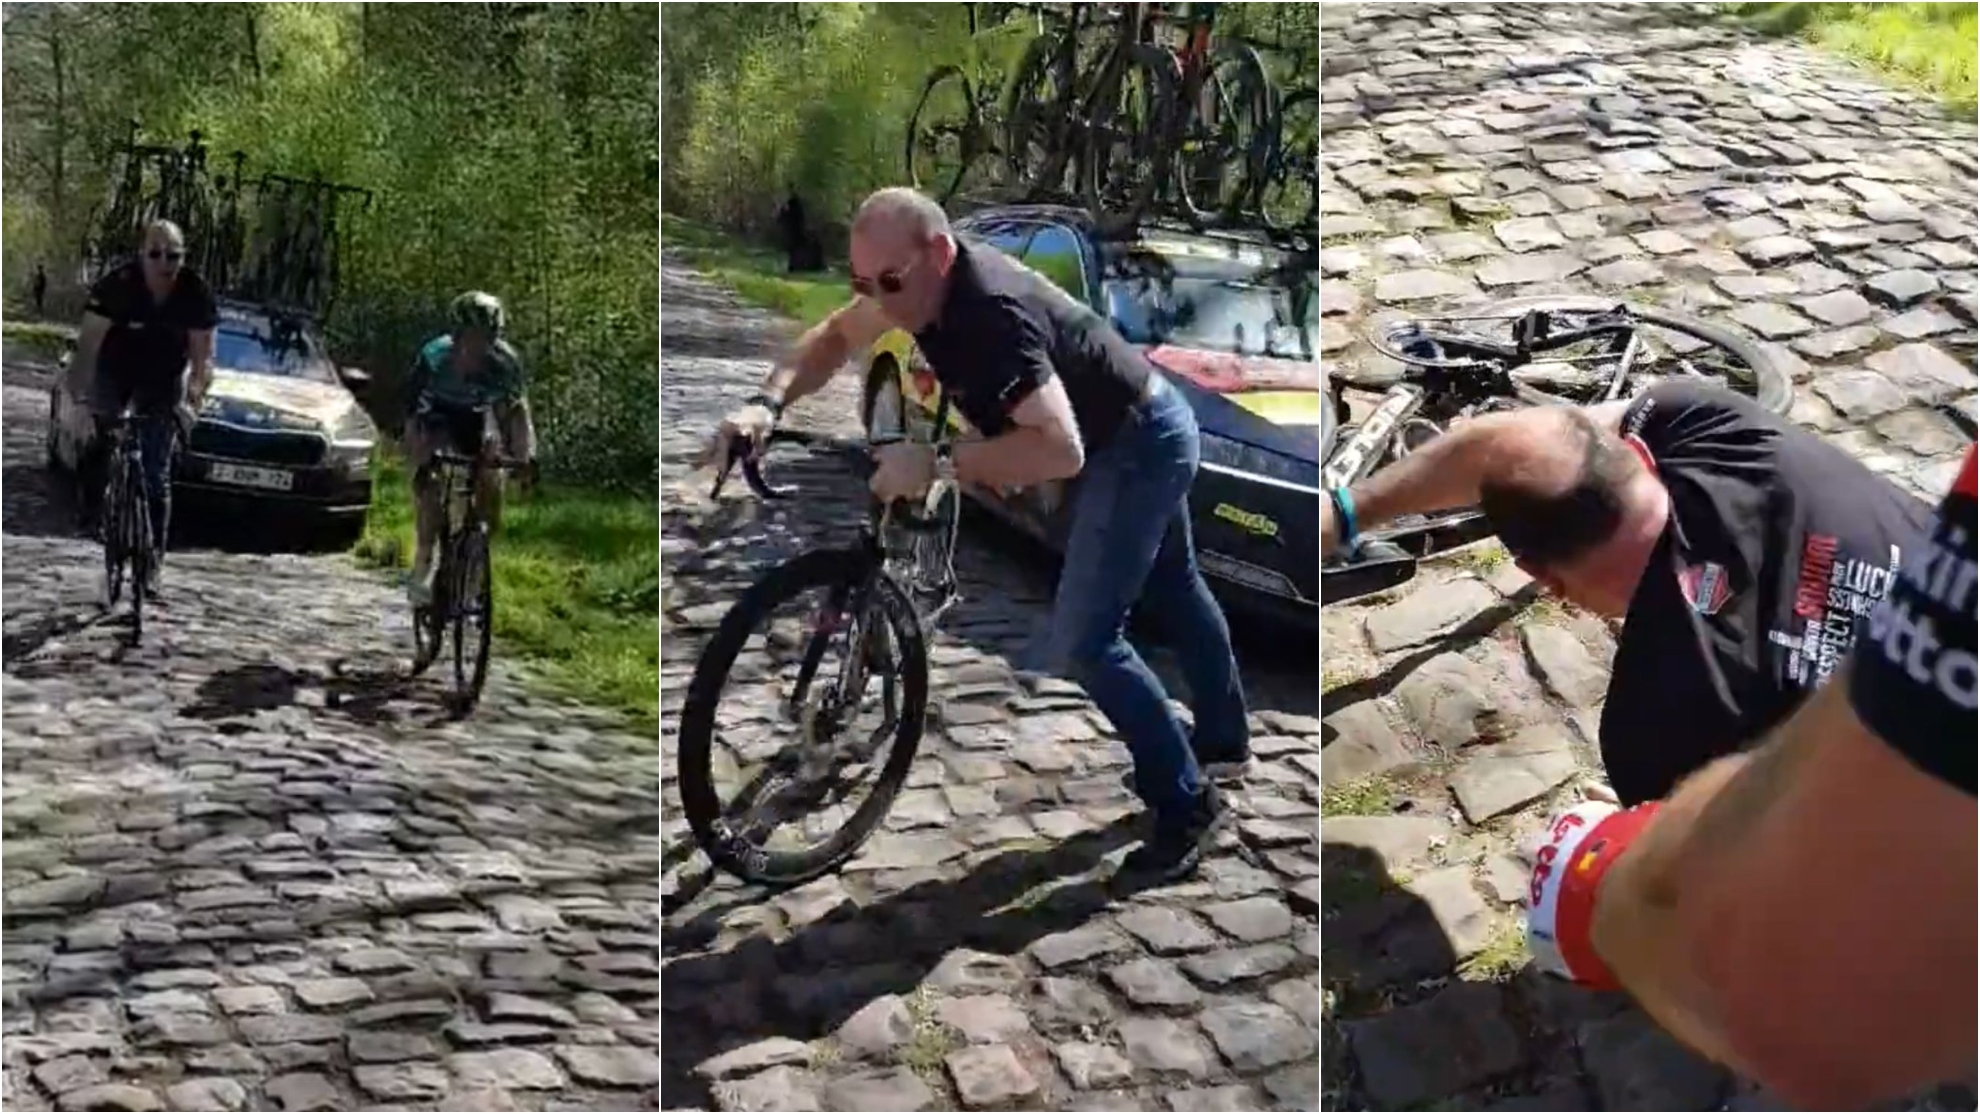 La Paris Roubaix no sólo es un infierno para los ciclistas: ¡Vaya mala 'pata' en la transición!